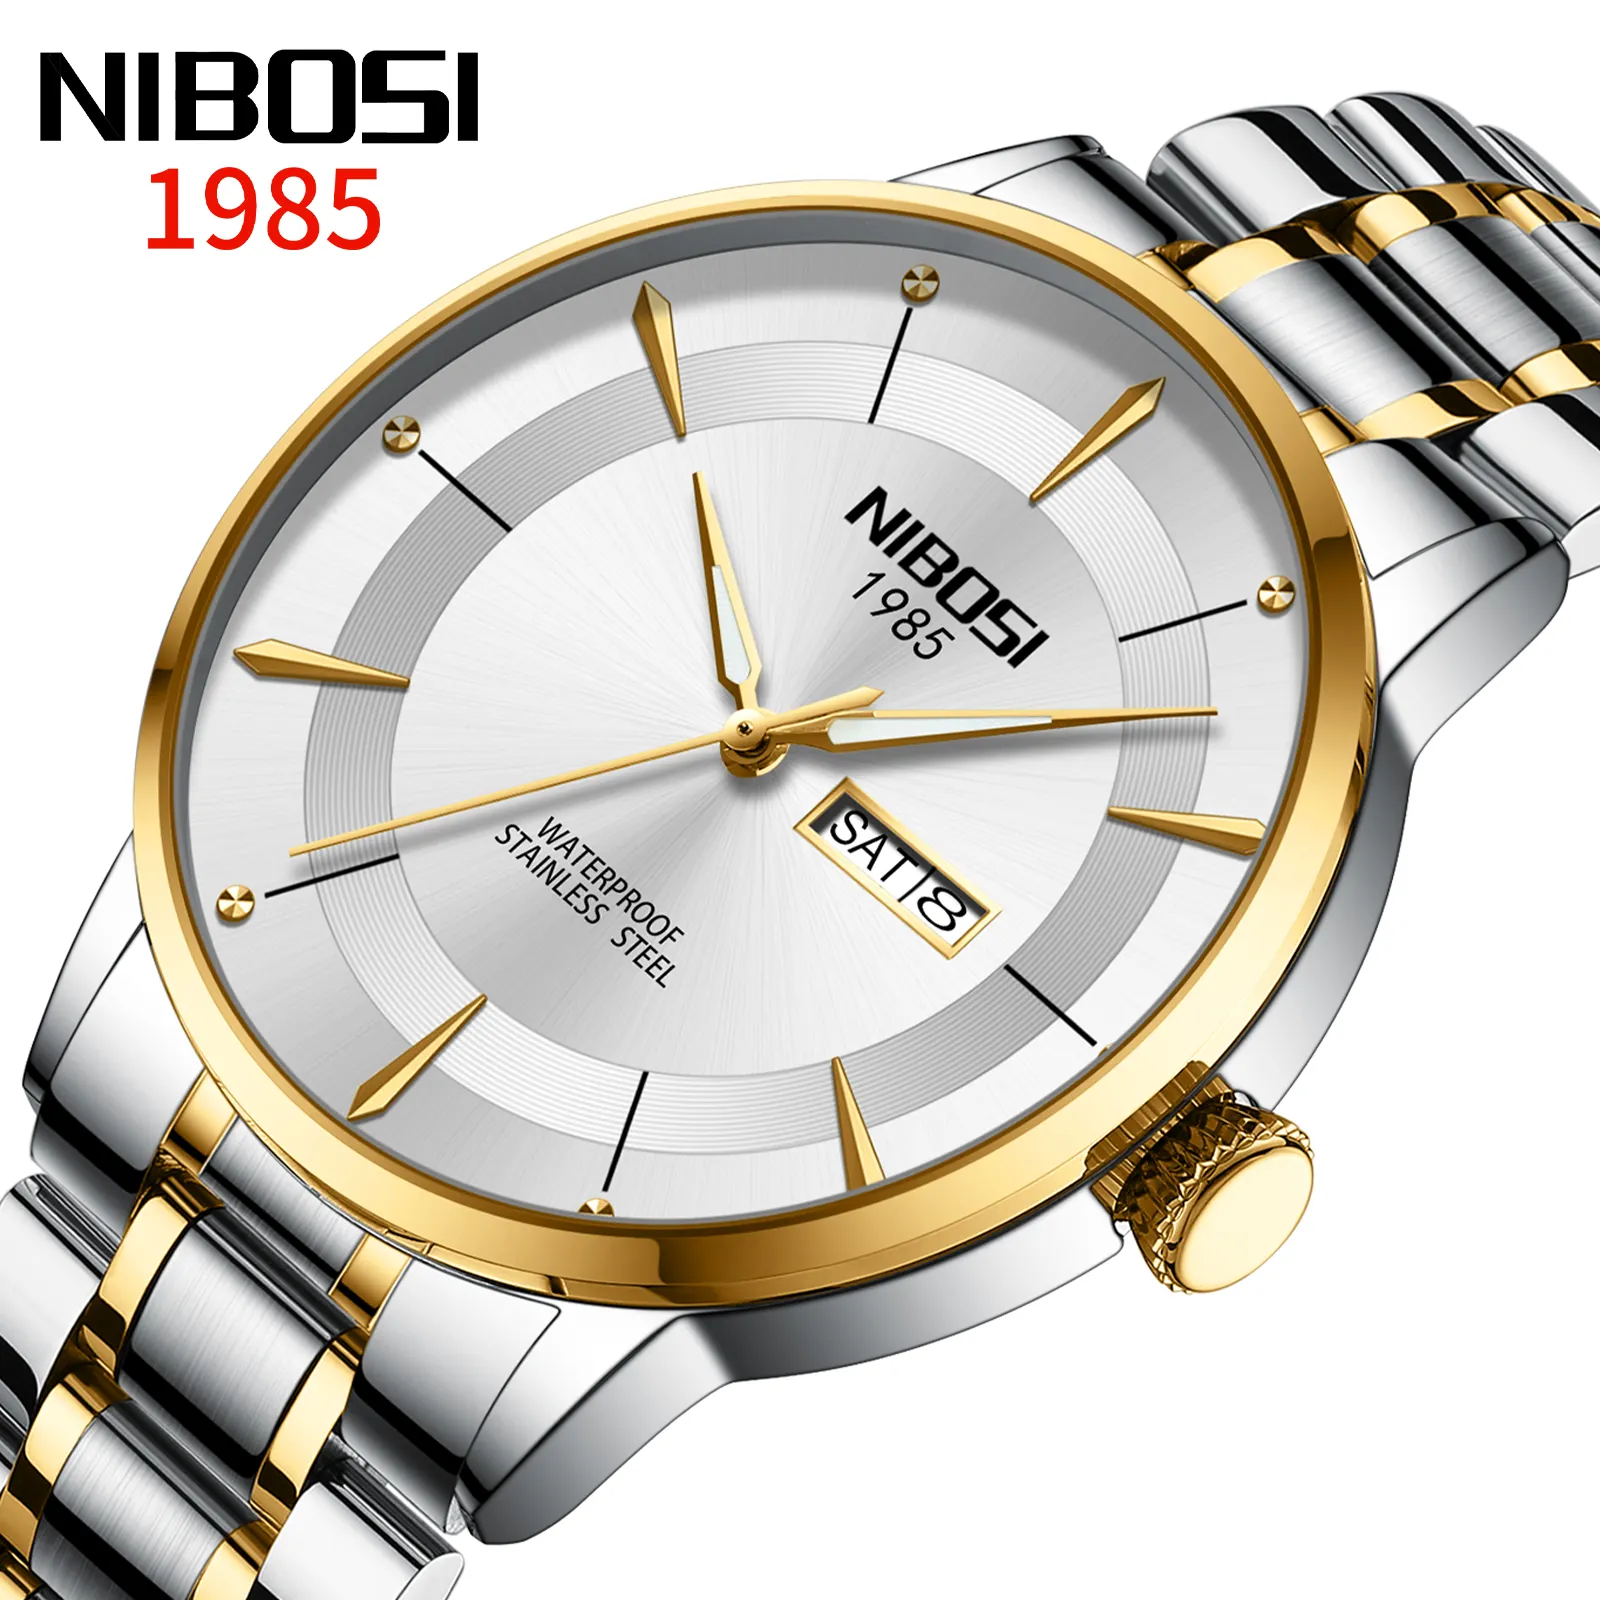 Reloj Nibosi 2607 para hombre, acero inoxidable, calidad superior, botón pulsador de lujo, cierre oculto, fecha luminosa, semana, relojes de pulsera deportivos